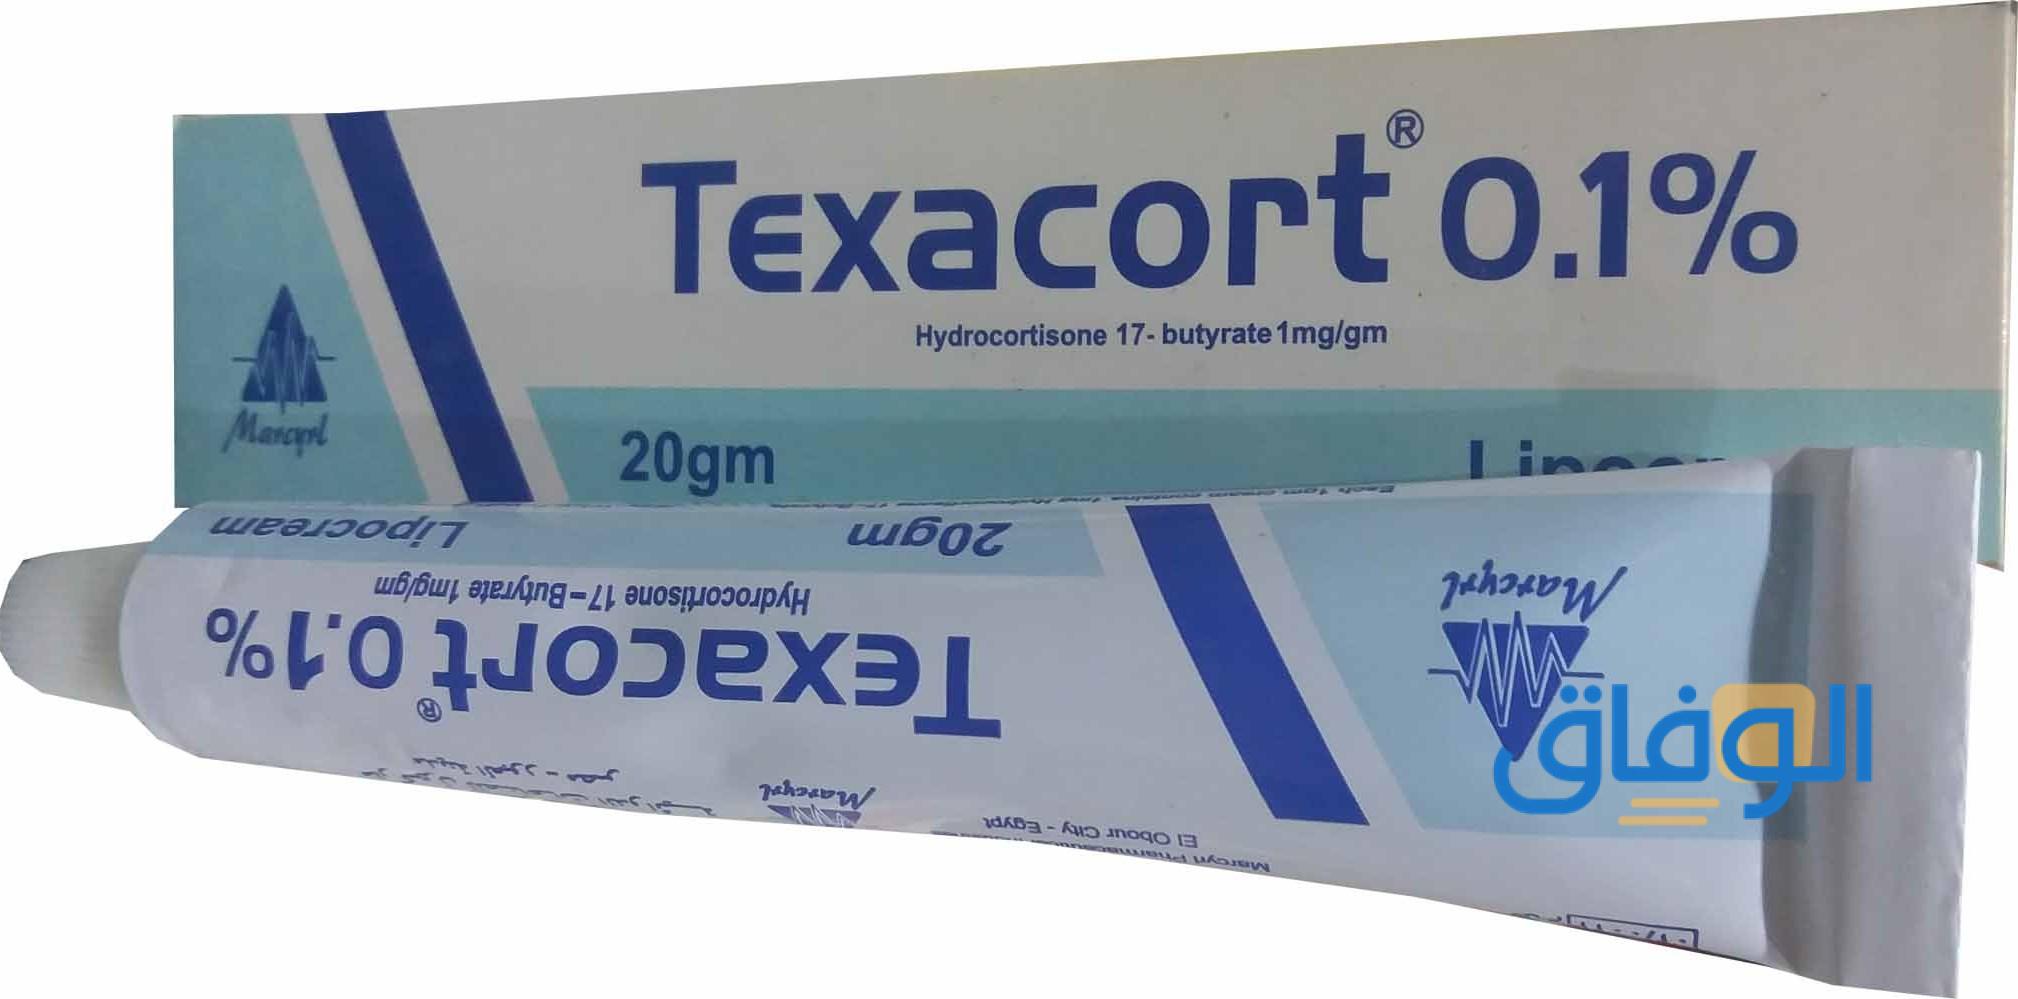 كريم تكساكورت “texacort” | دواعي الاستعمال والآثار الجانبية